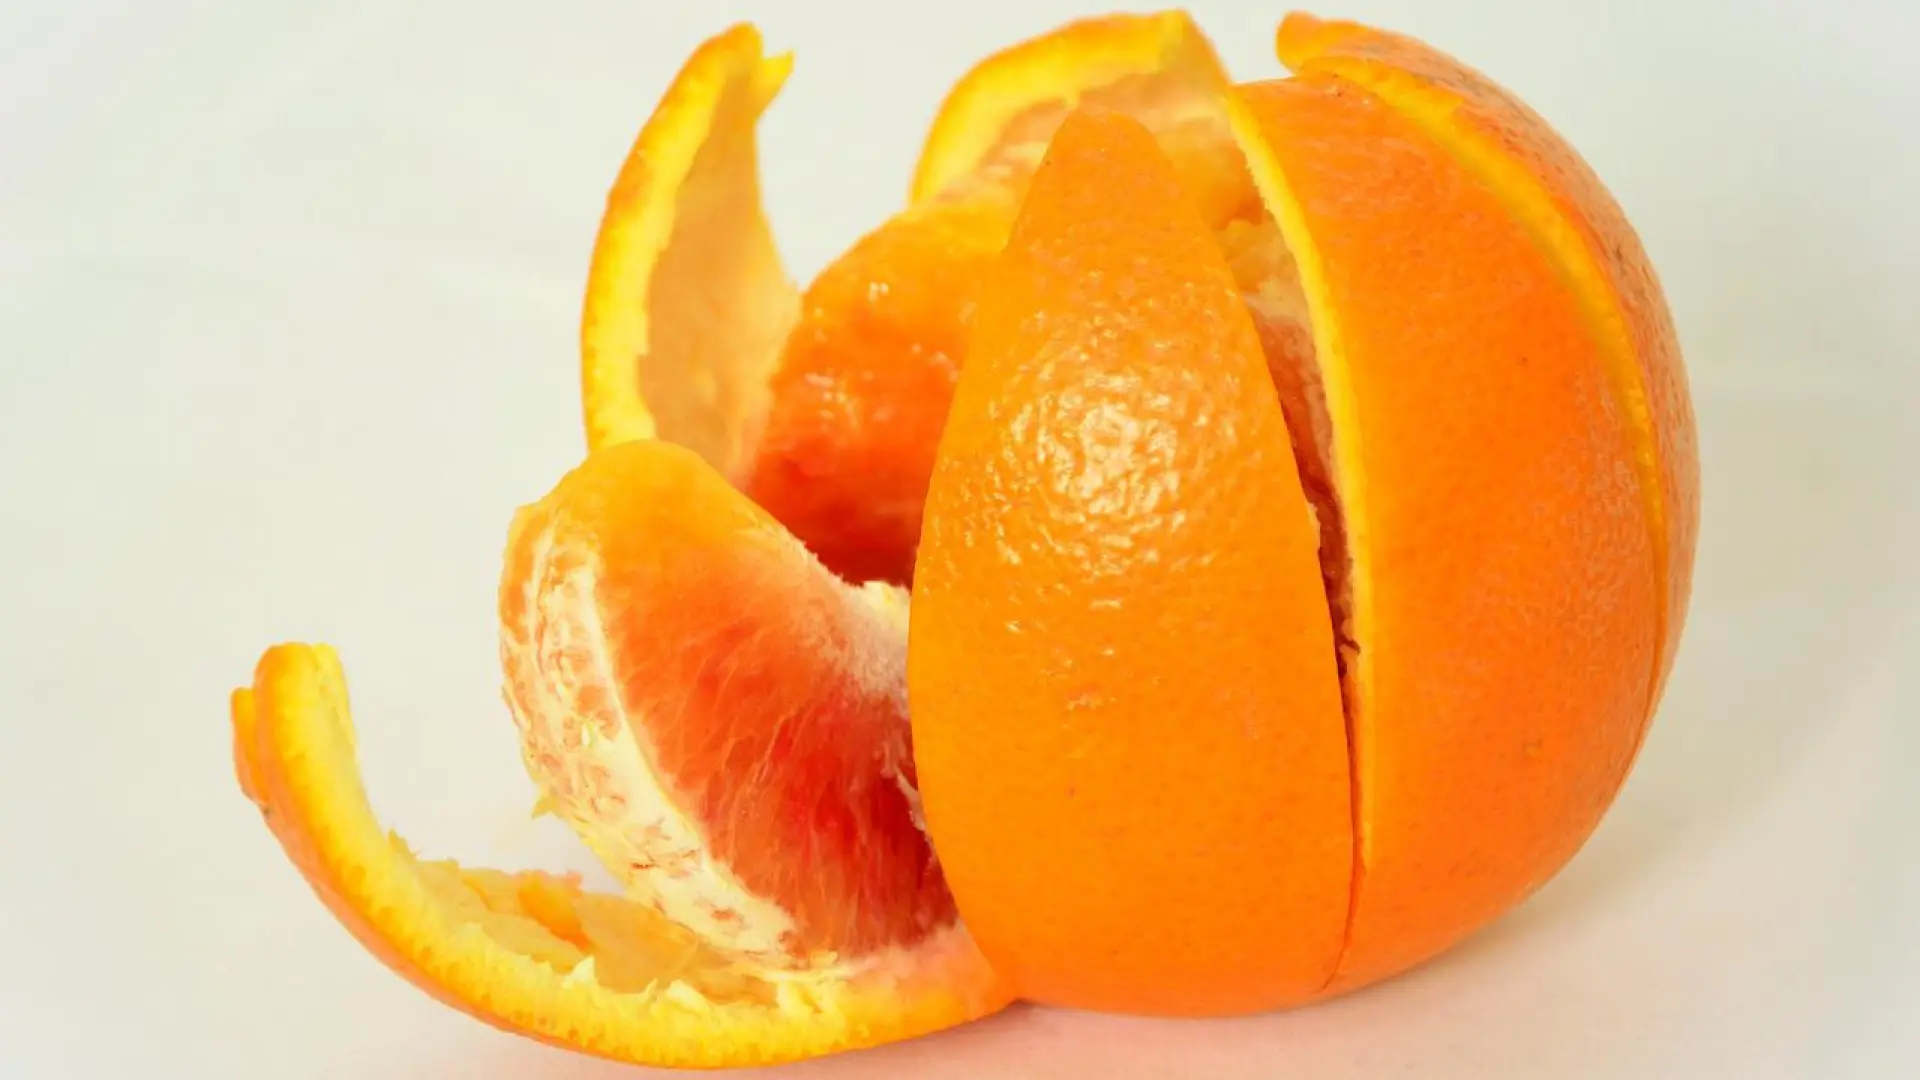 alt="Un estudio realizado en Estados Unidos señala que el extracto de cáscara de naranja podría mejorar la salud cardiovascular"